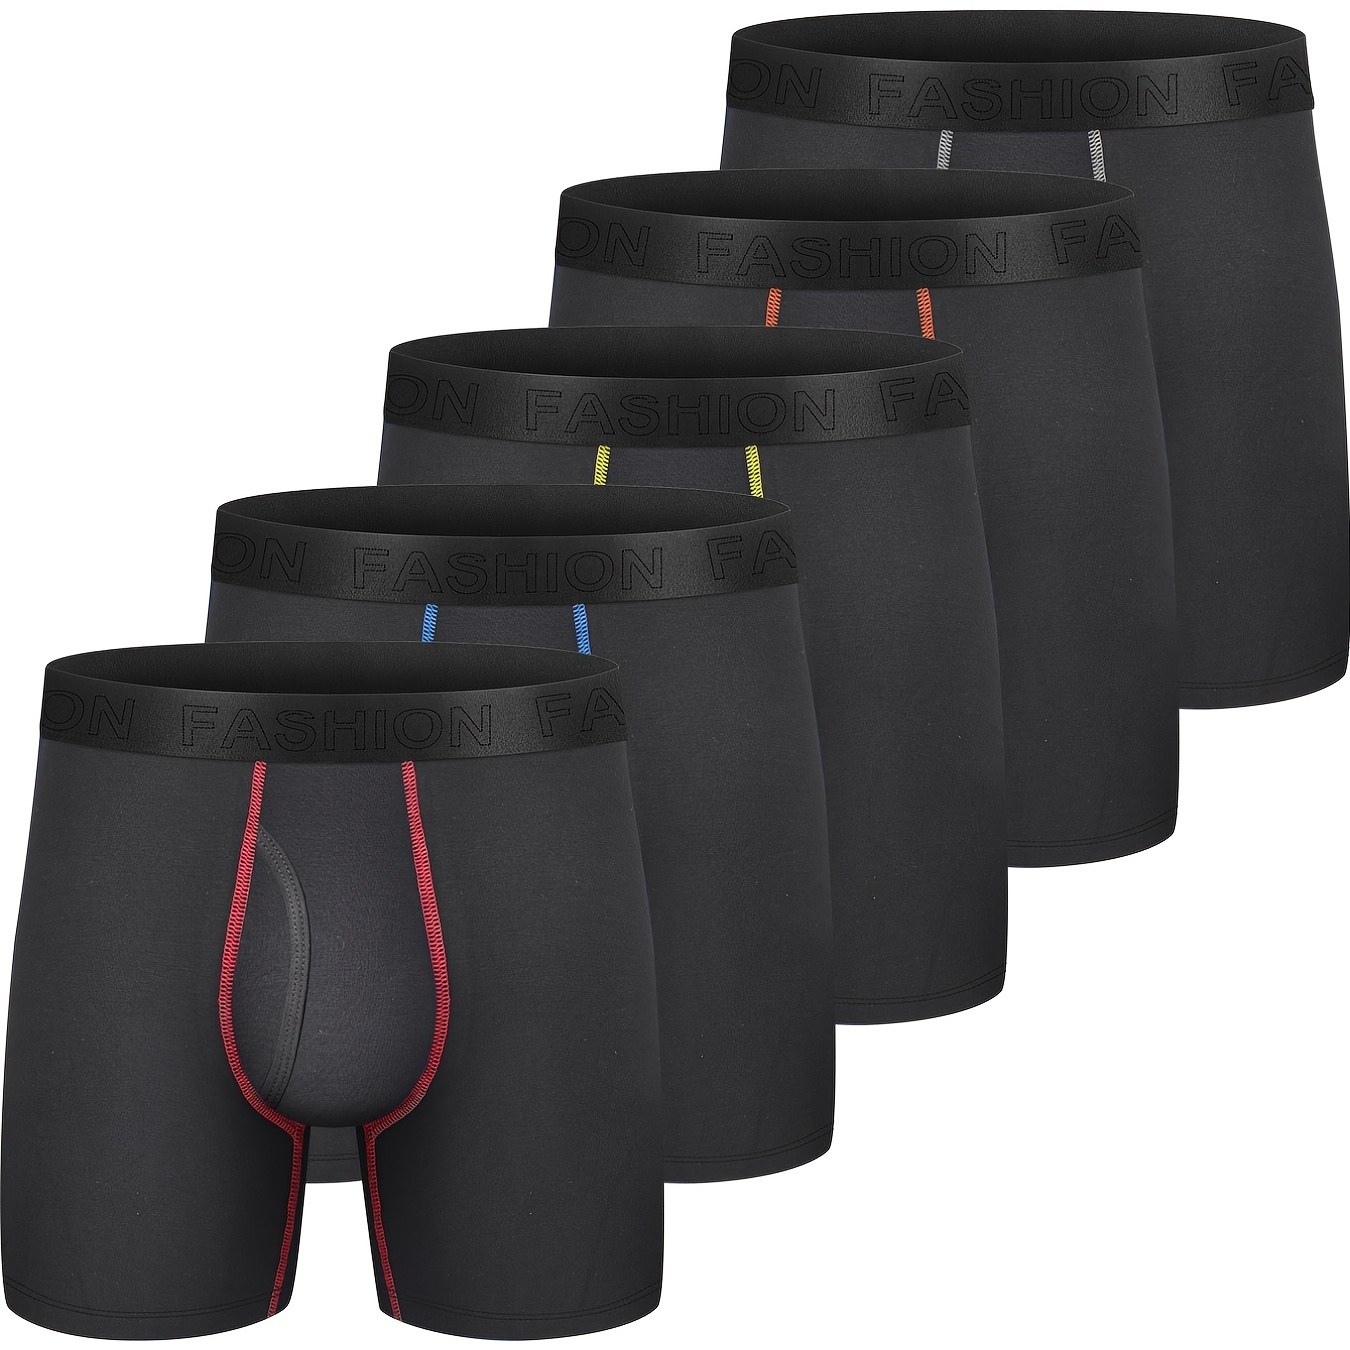 

5pcs Men's Boxer Briefs Stretch Cotton Breathable Comfortable Underwear